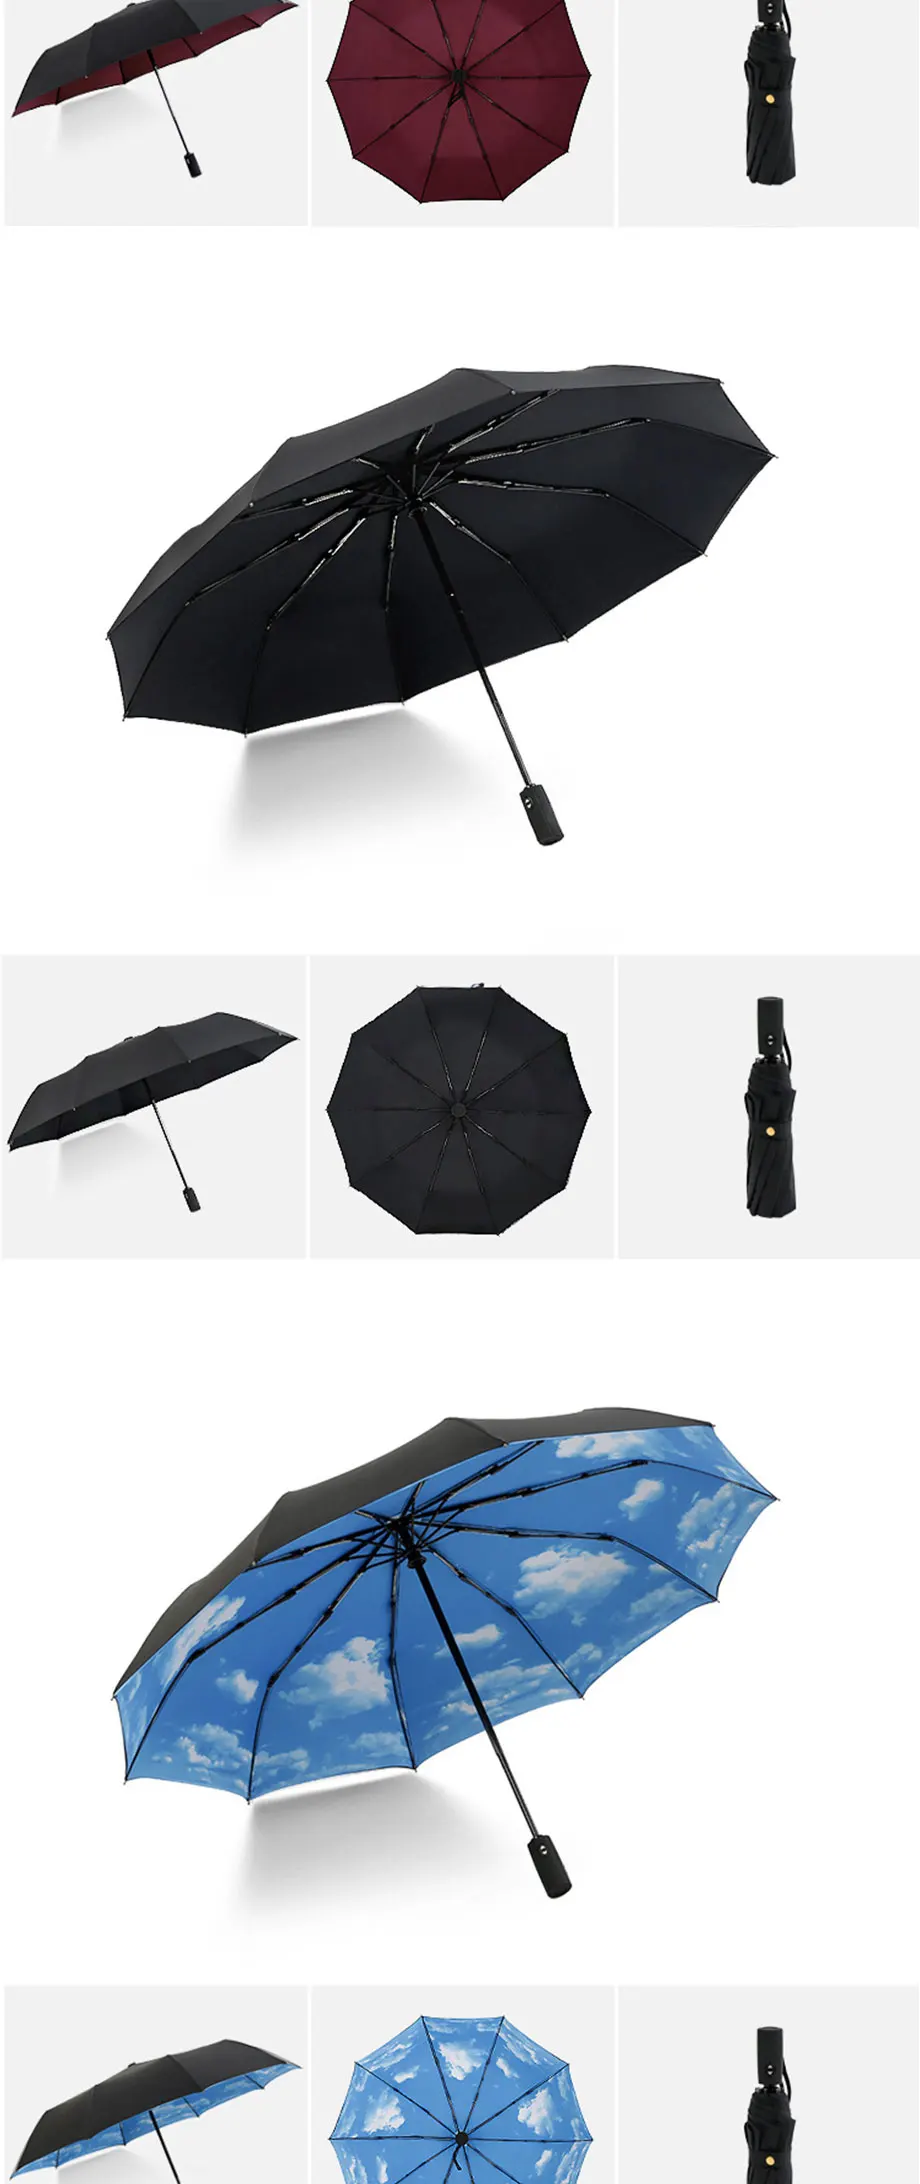 JPZYLFKZL, десять костей, автоматический складной зонт, женский, мужской, автомобильный, роскошный, большой, ветрозащитный, зонт, мужской, дождь, черная краска